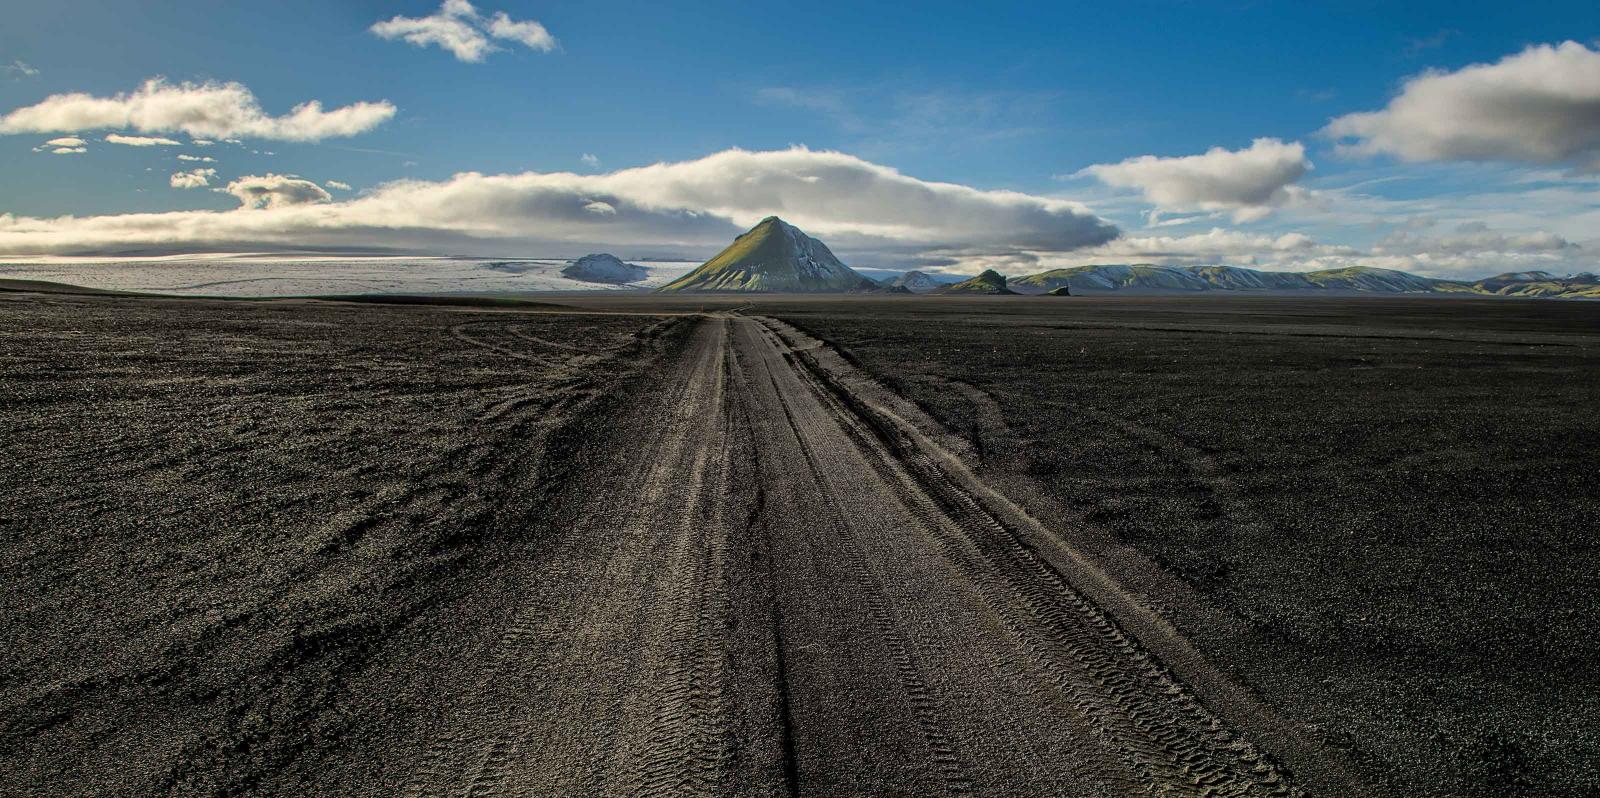 Dirt road approaching a mountain